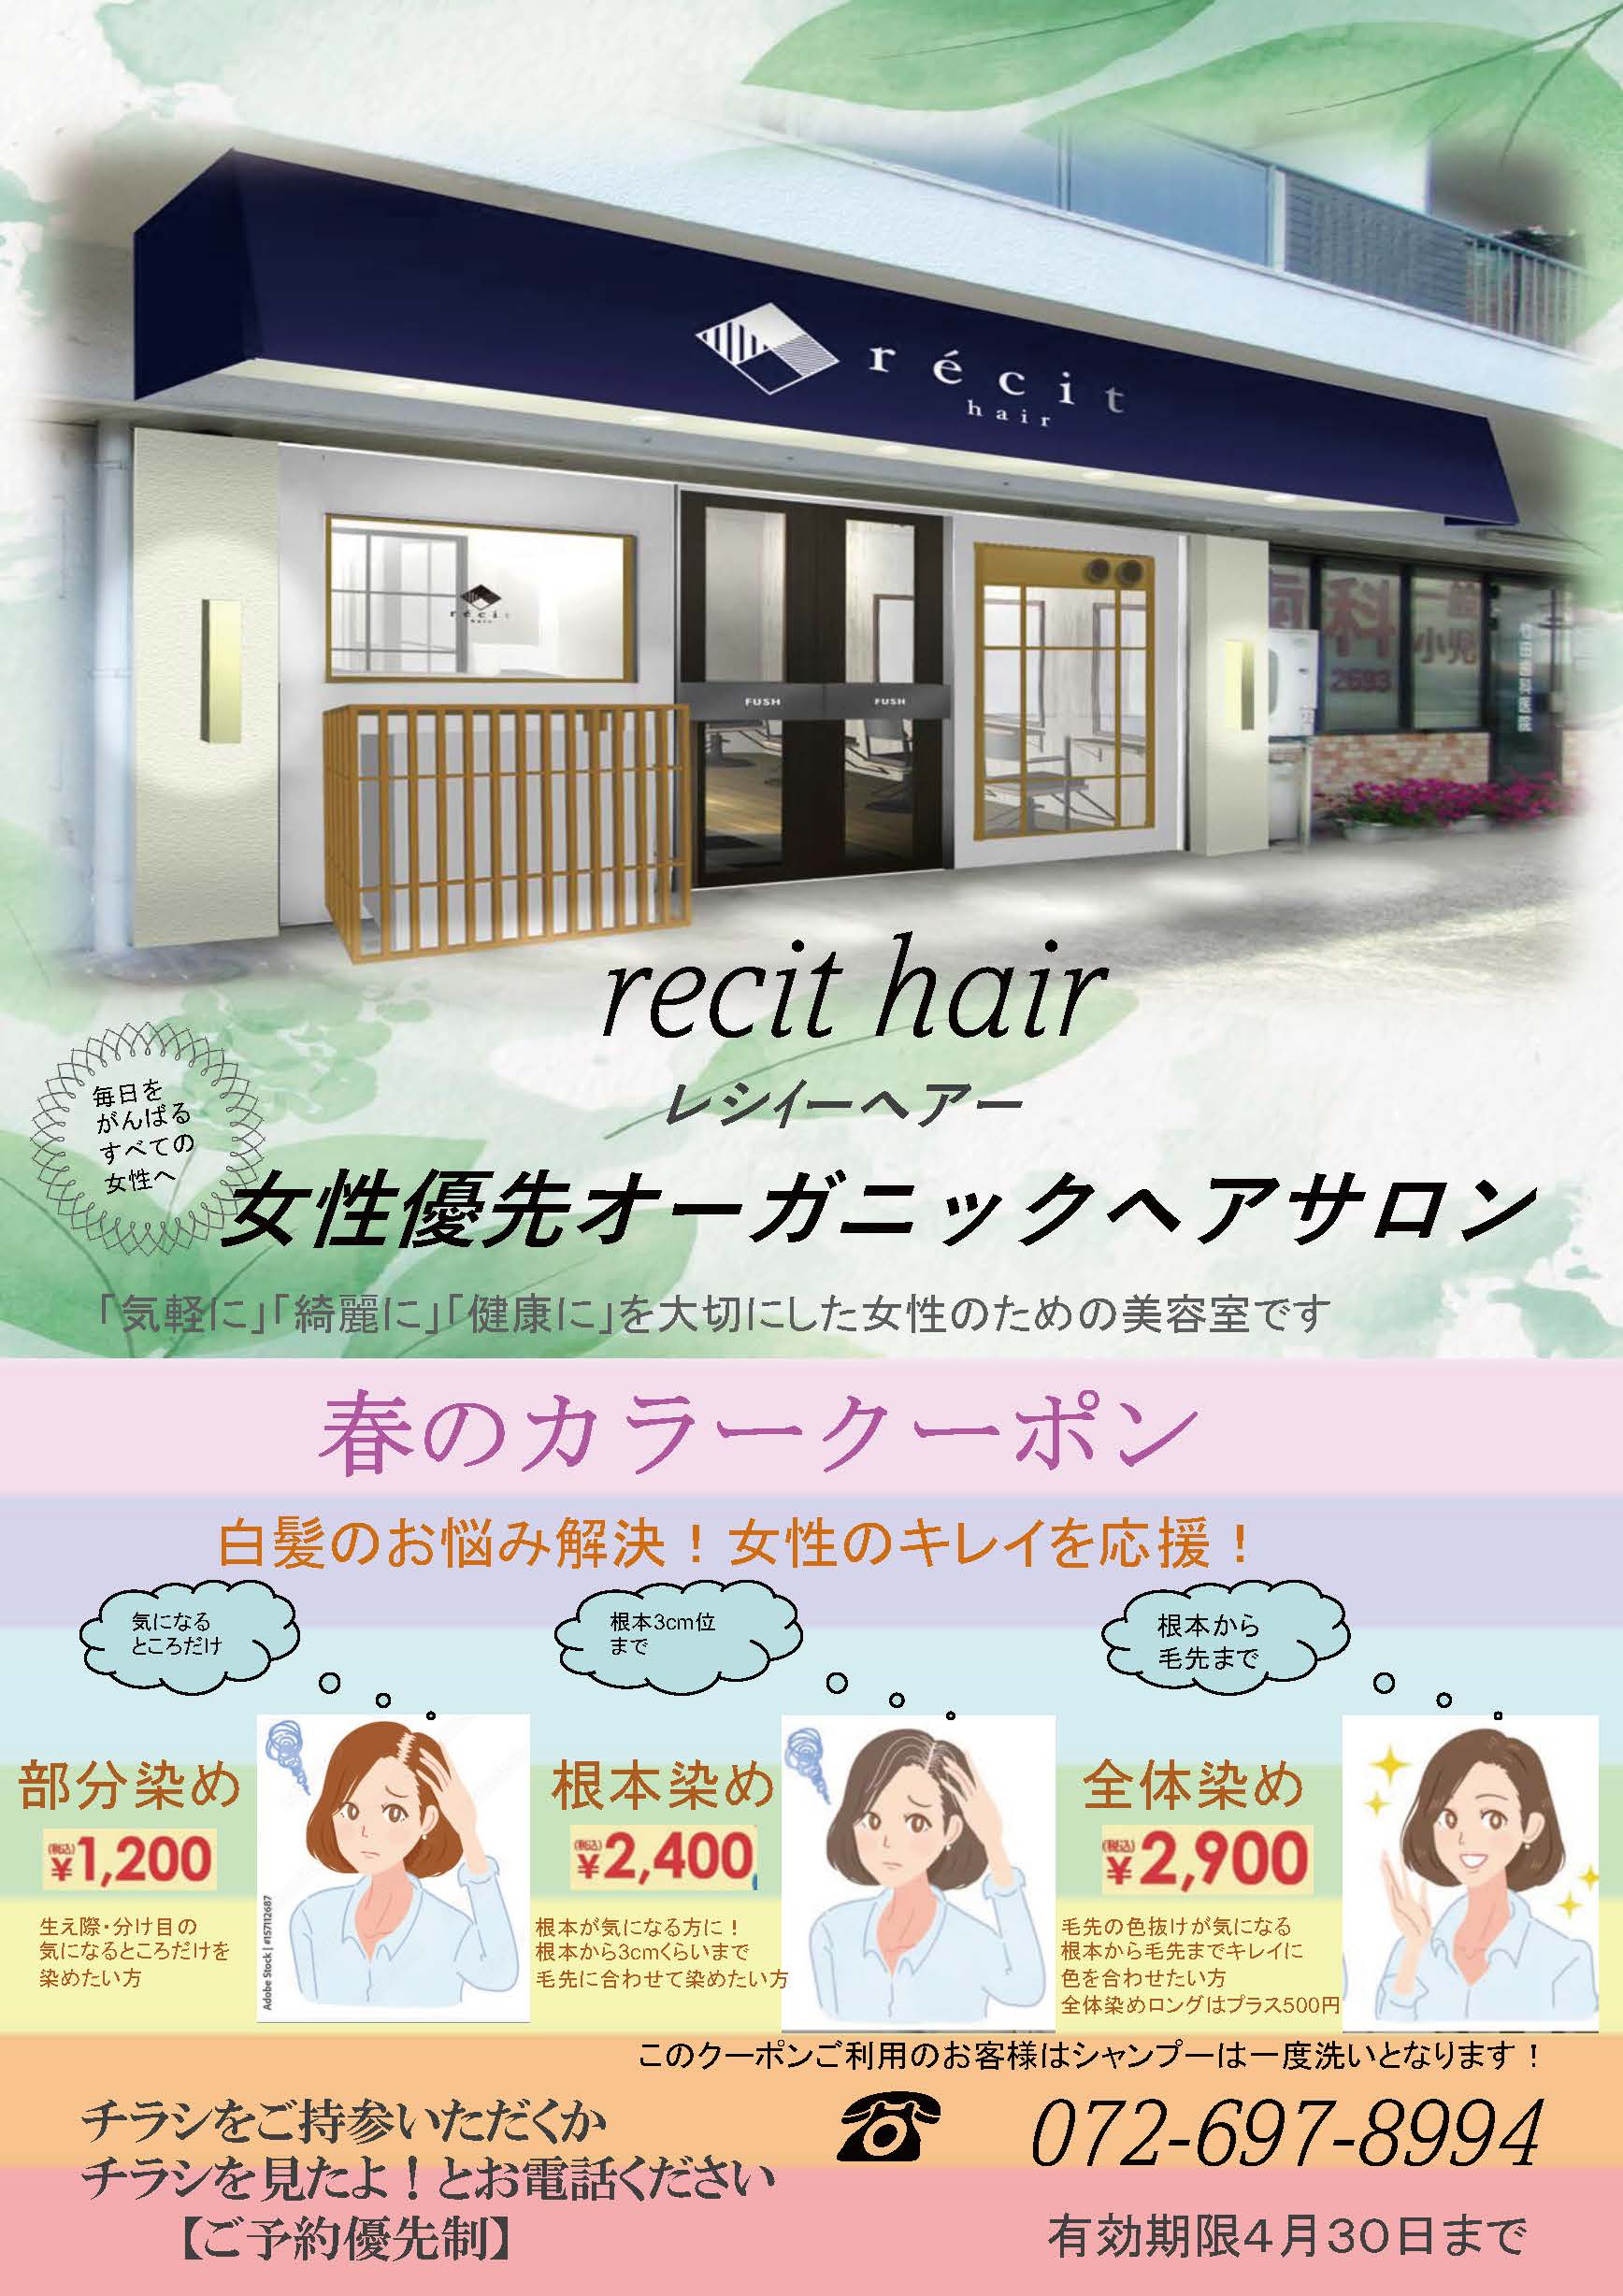 recit hair